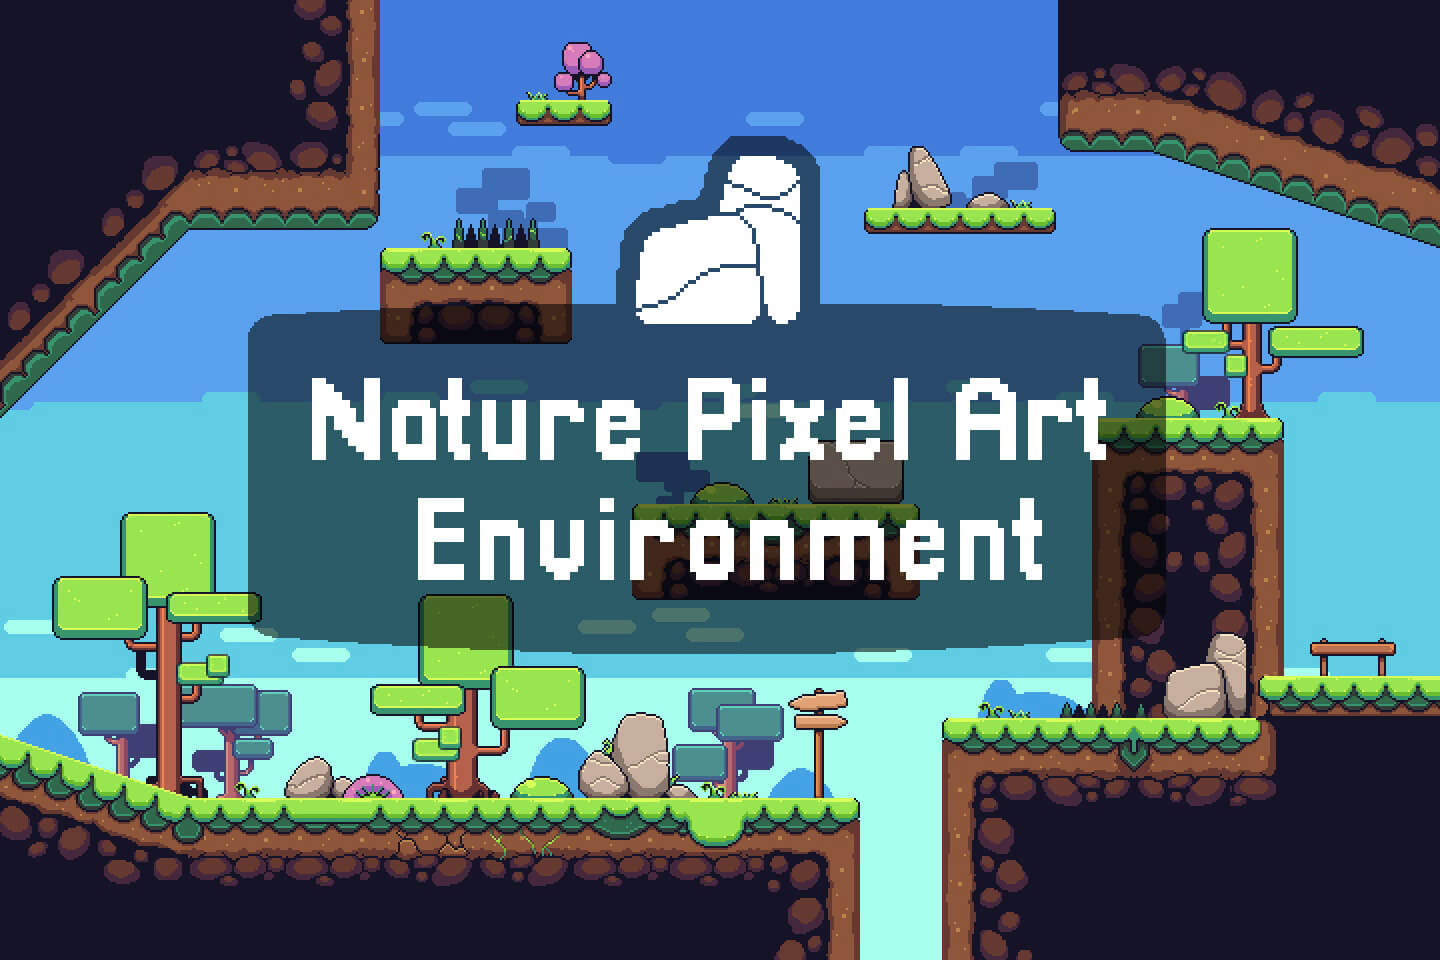 Nature Pixel Art Environment Free Assets Pack - CraftPix.net